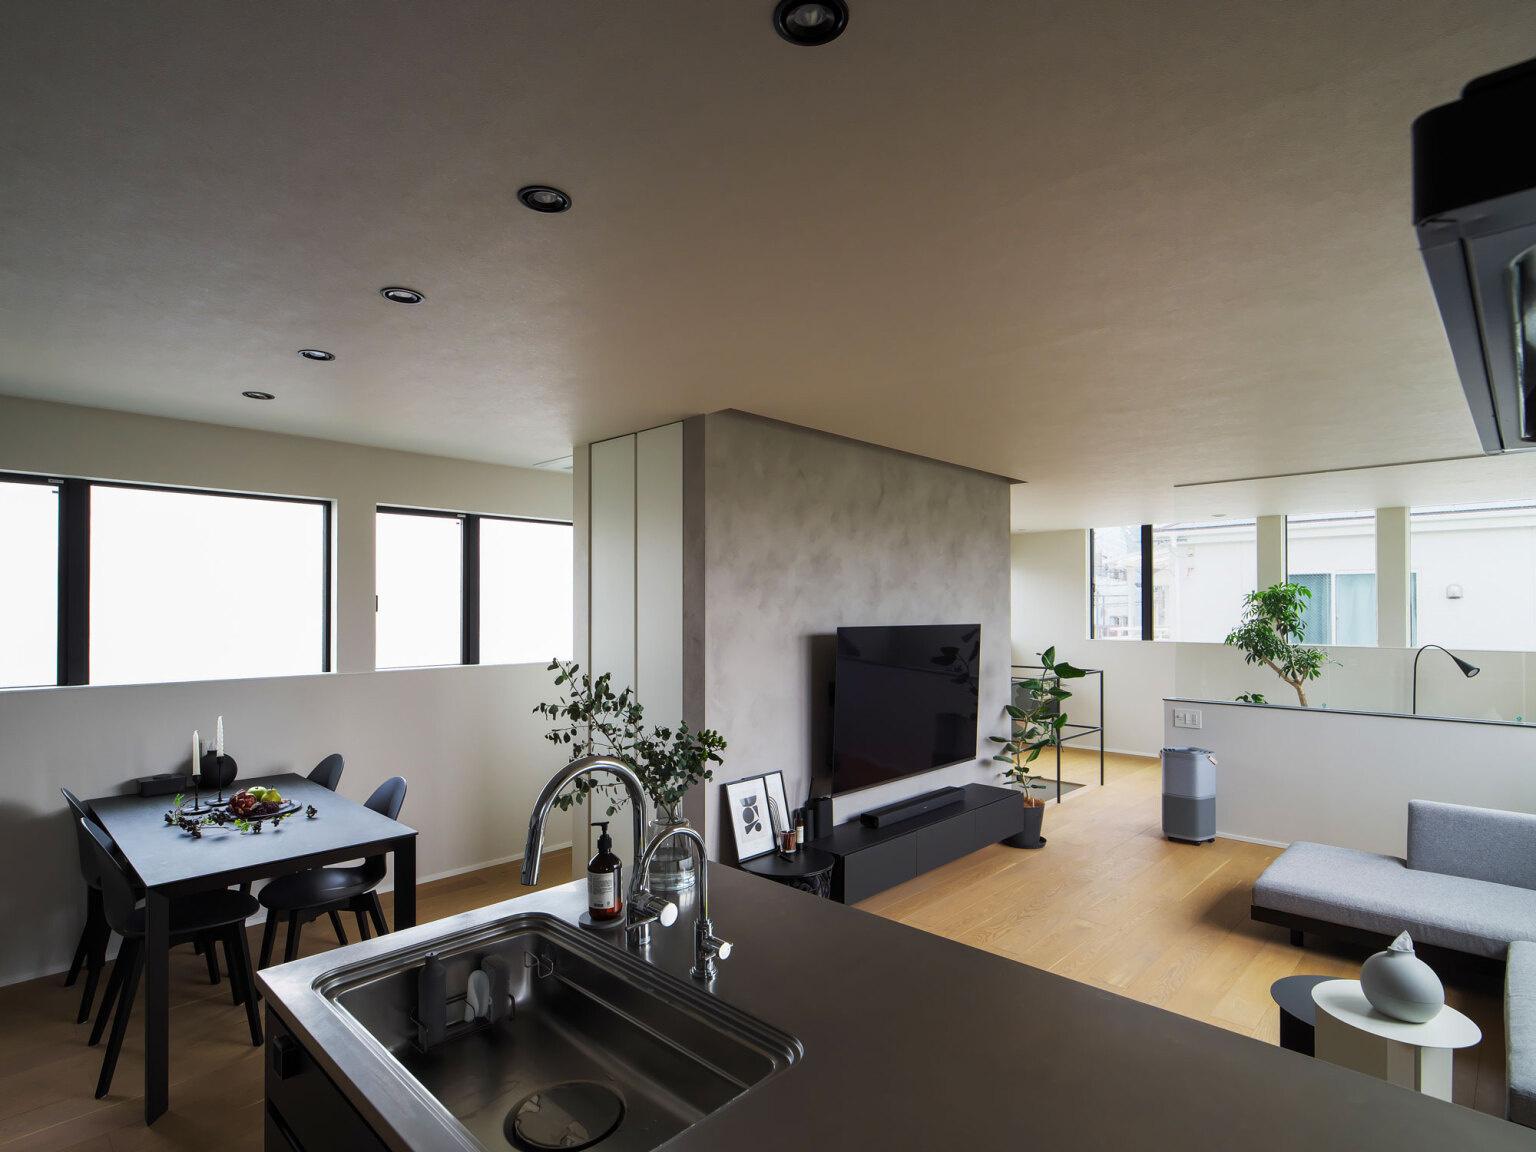 2階LDKをグルッと囲う連窓のおかげで都市の中でも陽の光と熱を室内にたっぷりと取り込み、心地よく住まえます。